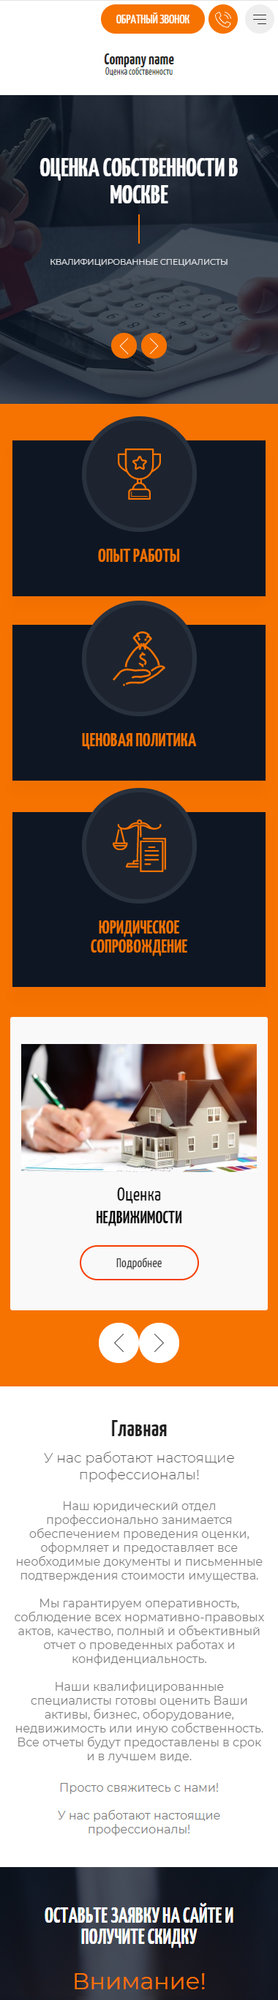 Готовый Сайт-Бизнес № 2770200 - Оценка собственности (Мобильная версия)